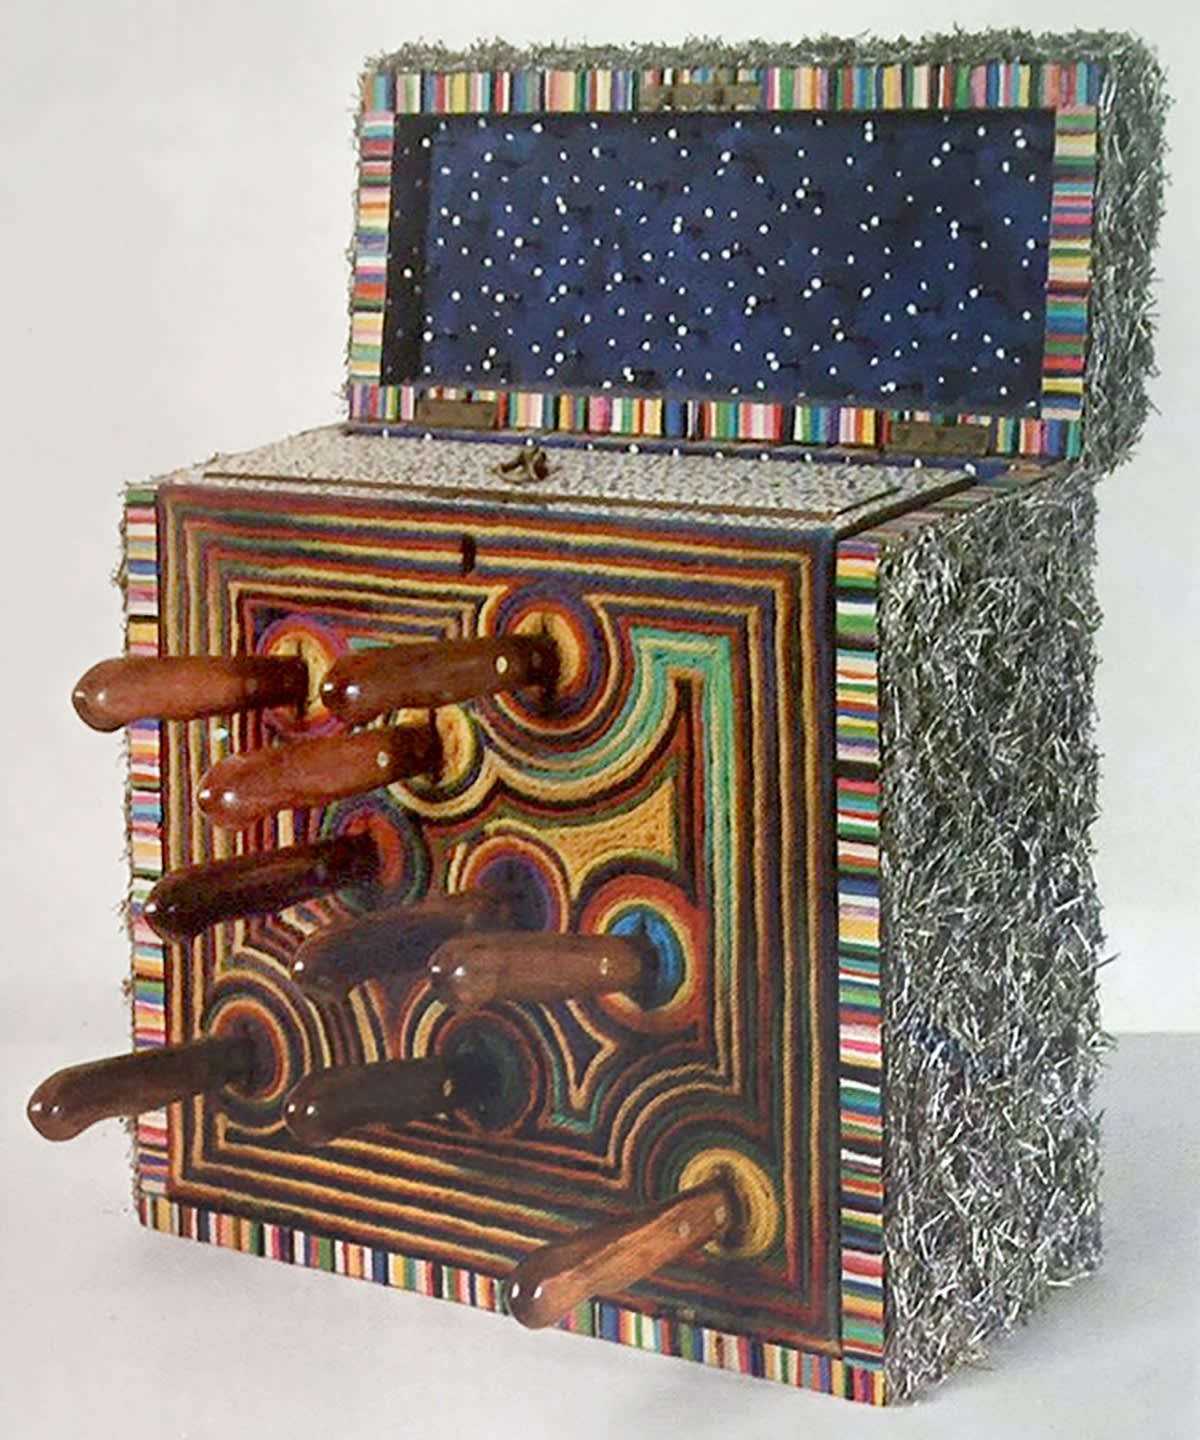 LUCAS SAMARAS, Box No. 93, 1974